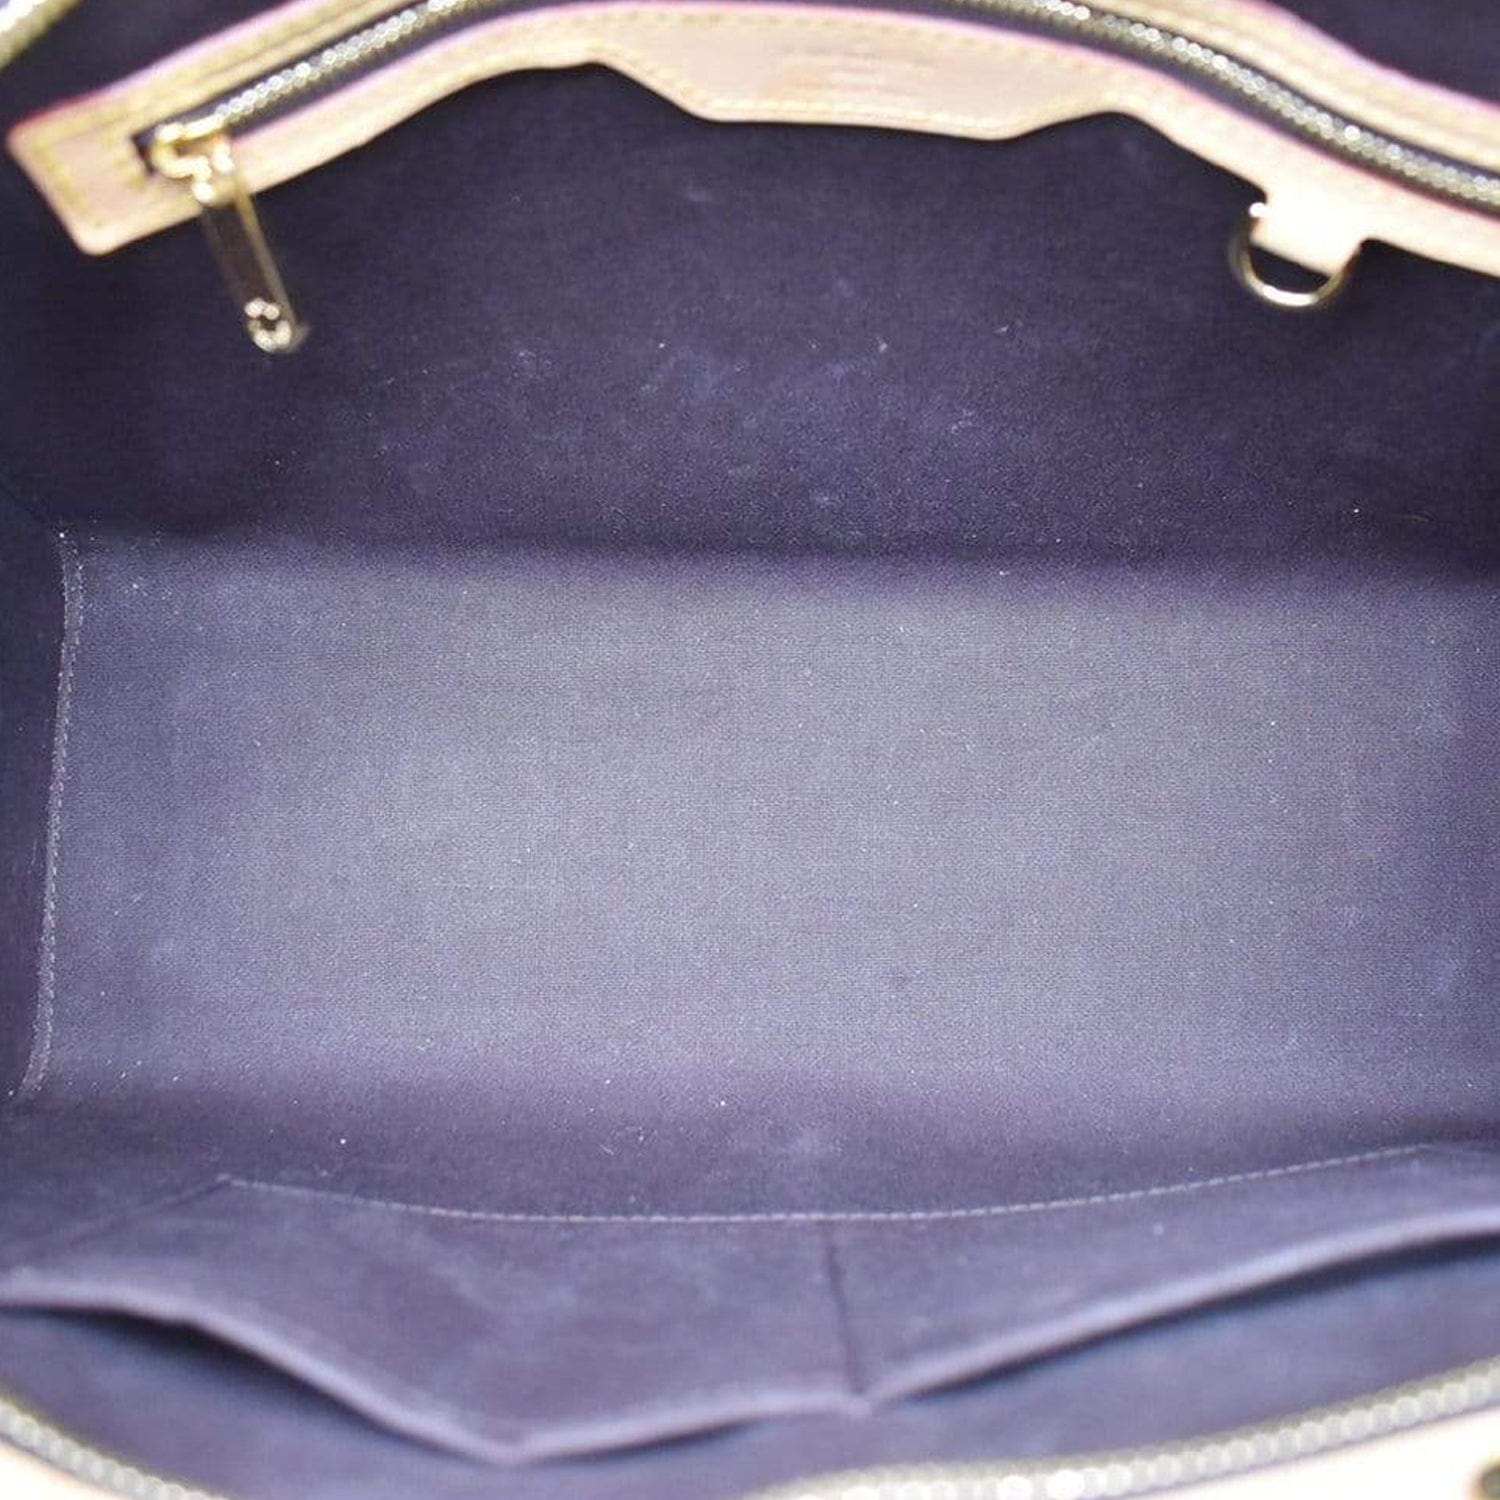 Louis Vuitton Monogram Vernis Brea MM - Neutrals Handle Bags